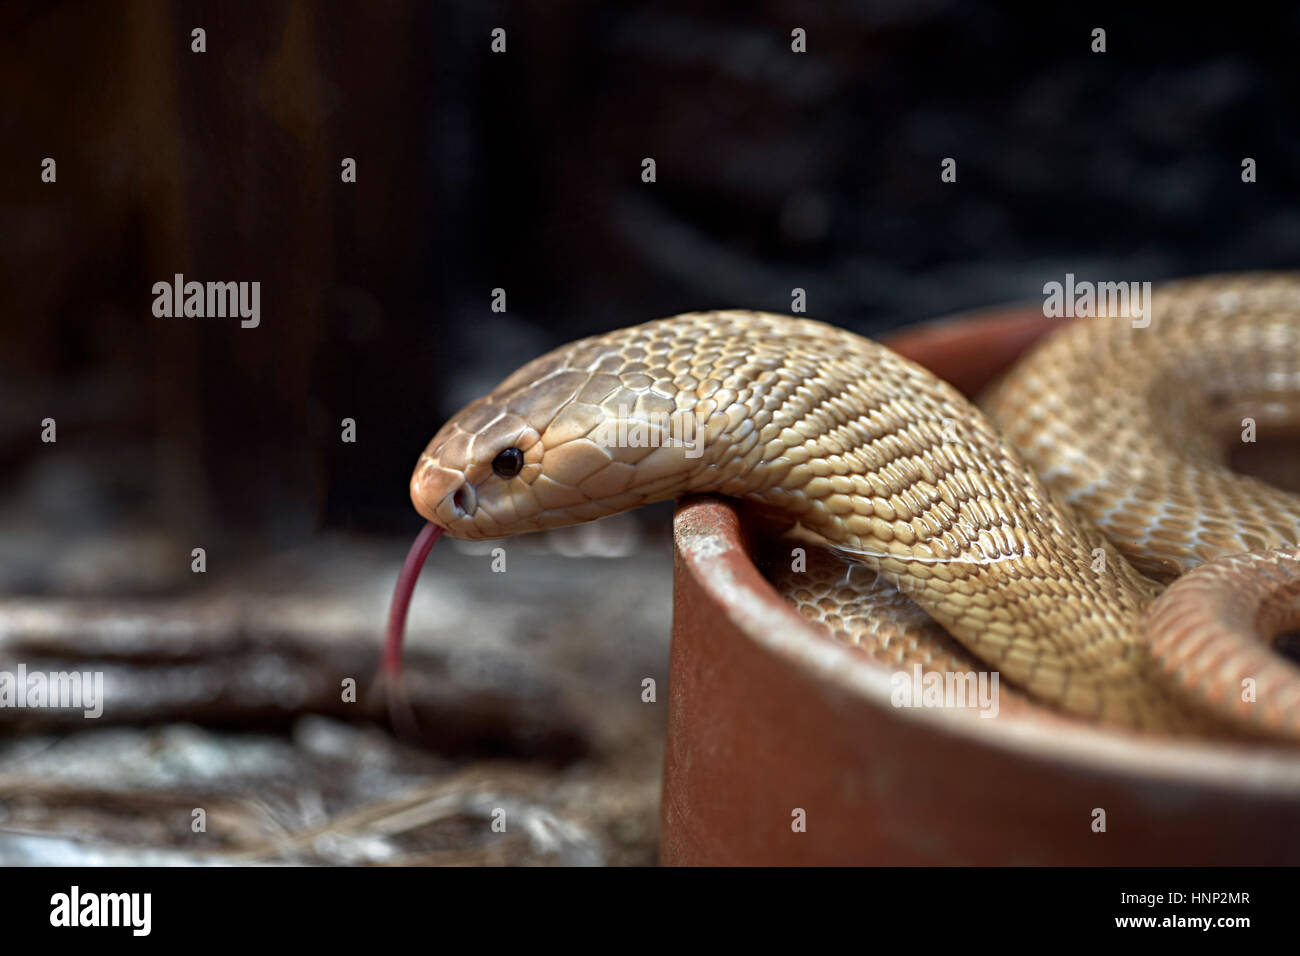 Albino Cobra, monocled cobra, (Naja kaouthia), Asian venomous snake. Tongue out. Thailand Southeast asia Stock Photo